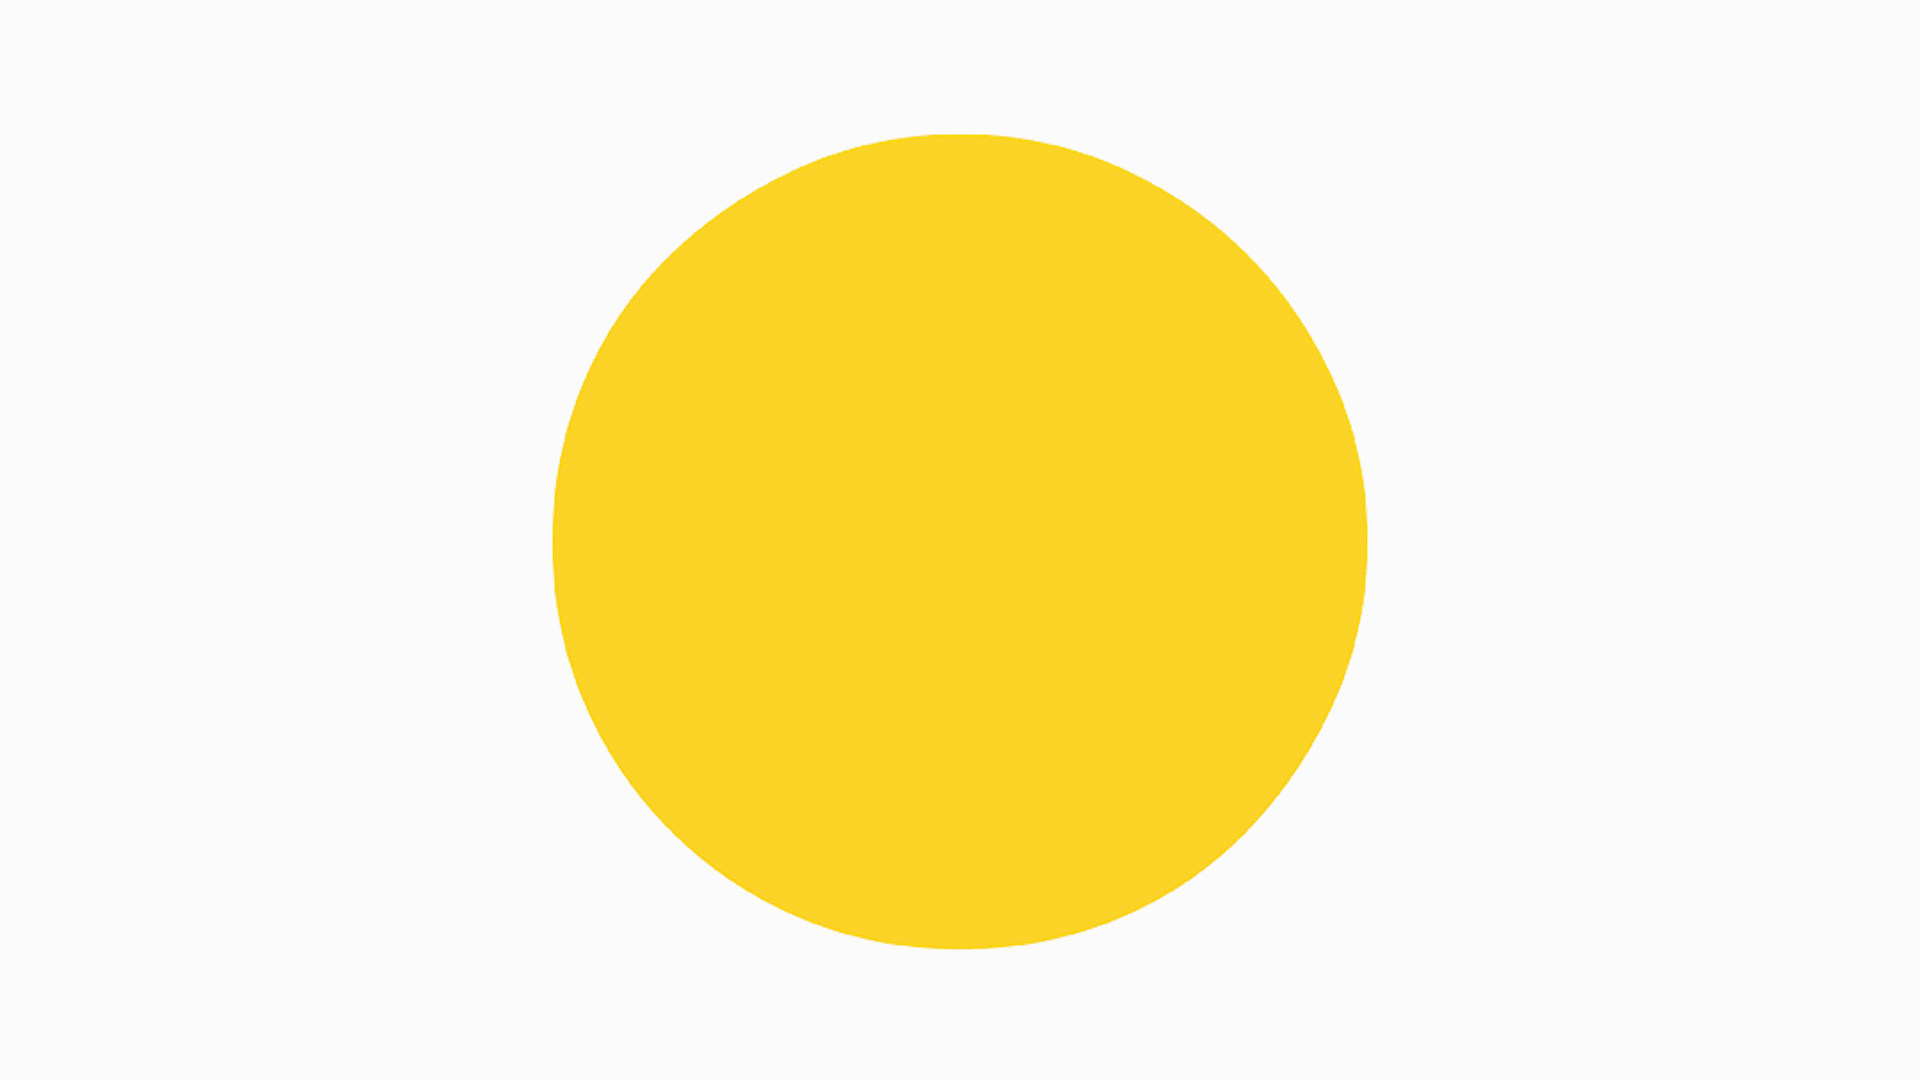 Круг желтый лист. Желтый круг. Желтые кружочки. Желтый кружок. Круг желтого цвета.